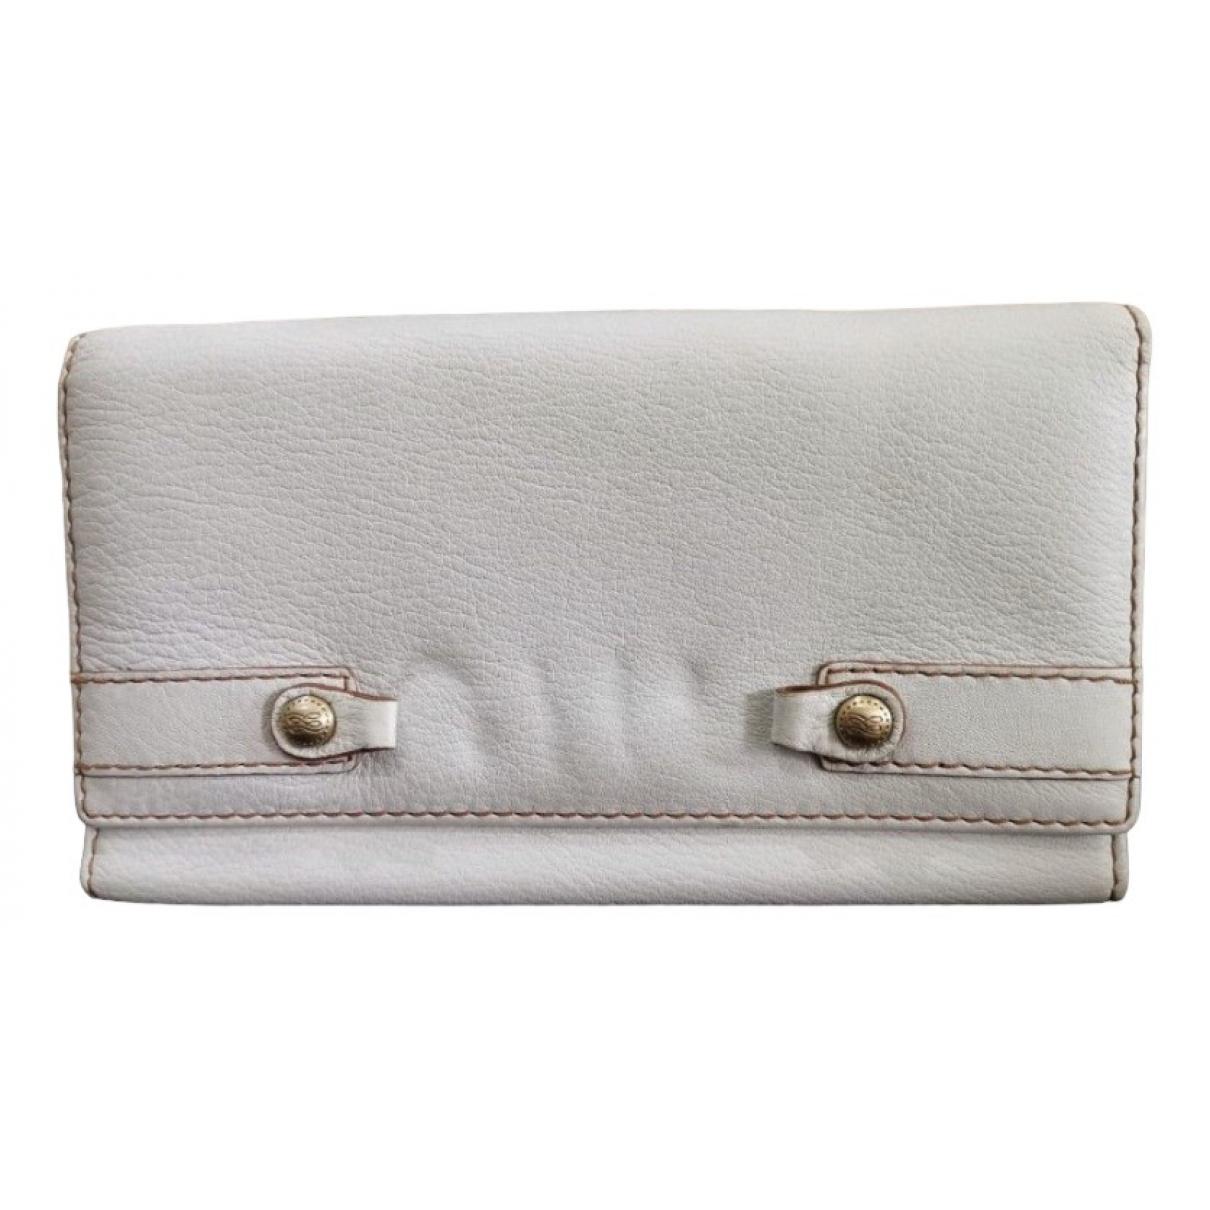 Leather purse - 1